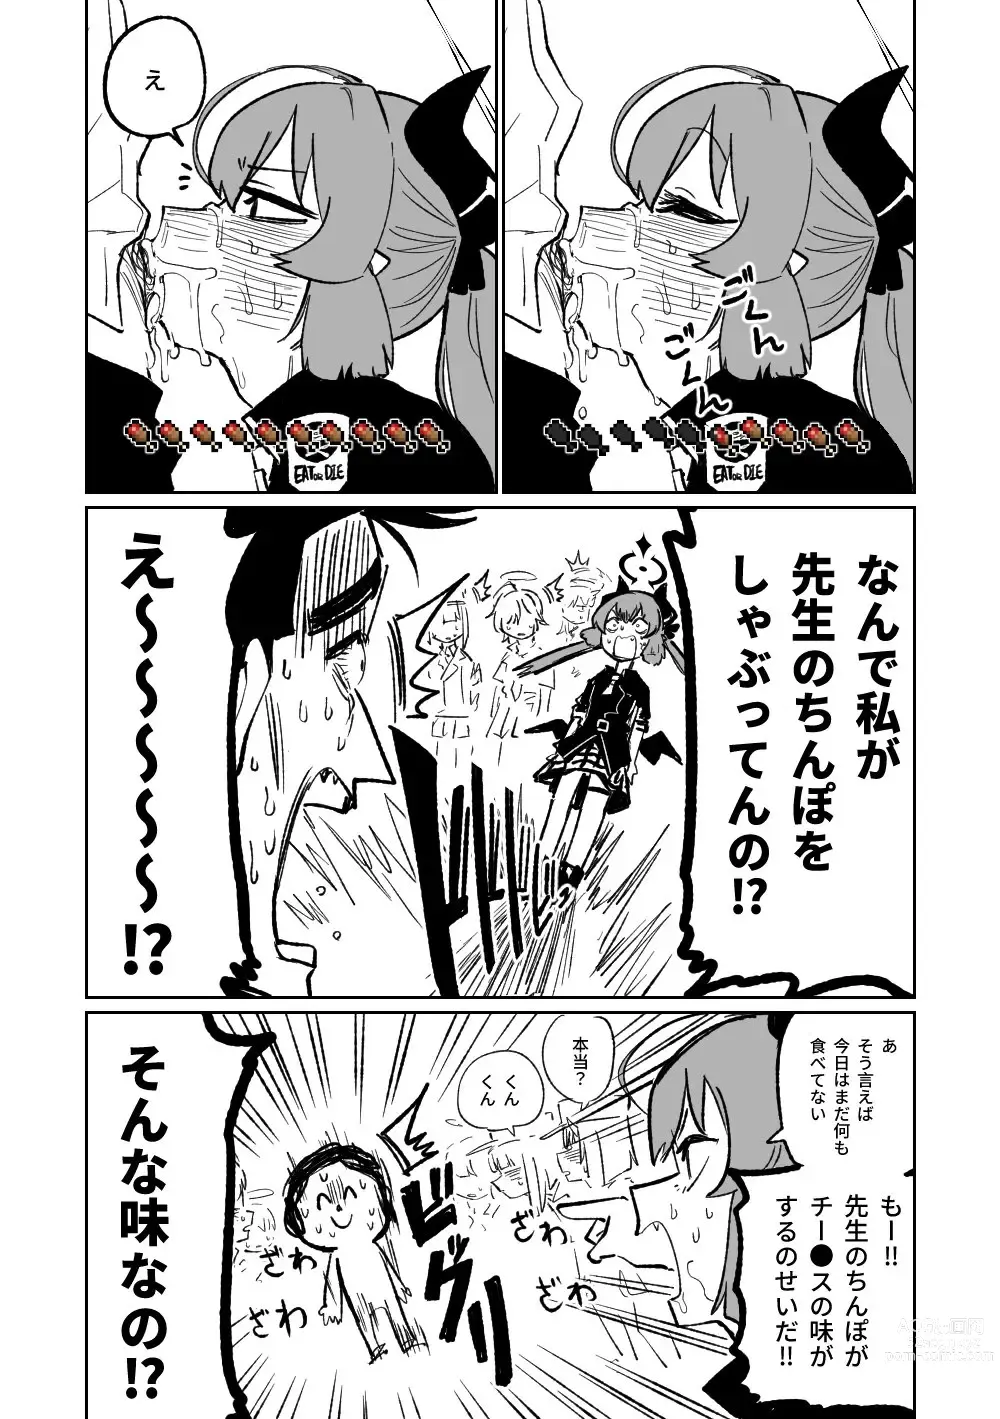 Page 4 of doujinshi Yamete Junko